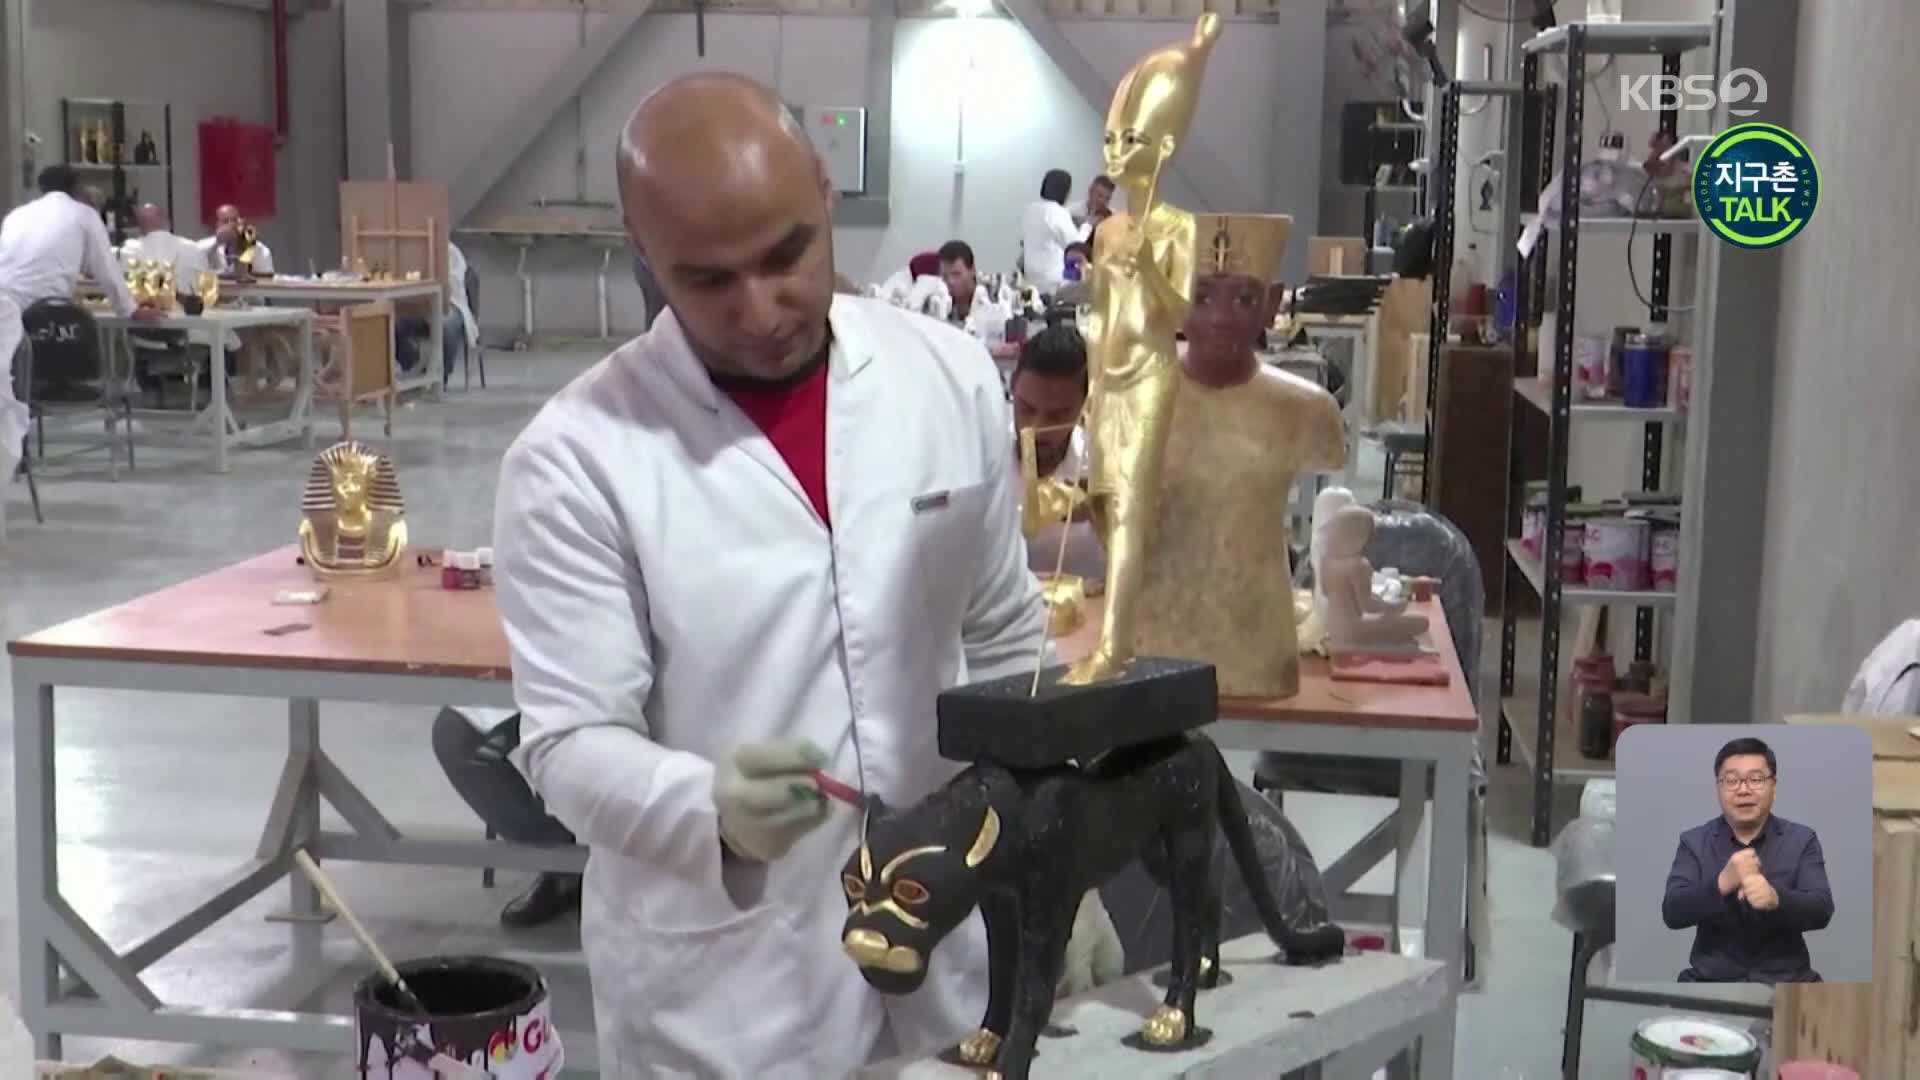 [지구촌 Talk] ‘고대 이집트 유물’ 공식 복제품 제작 공장